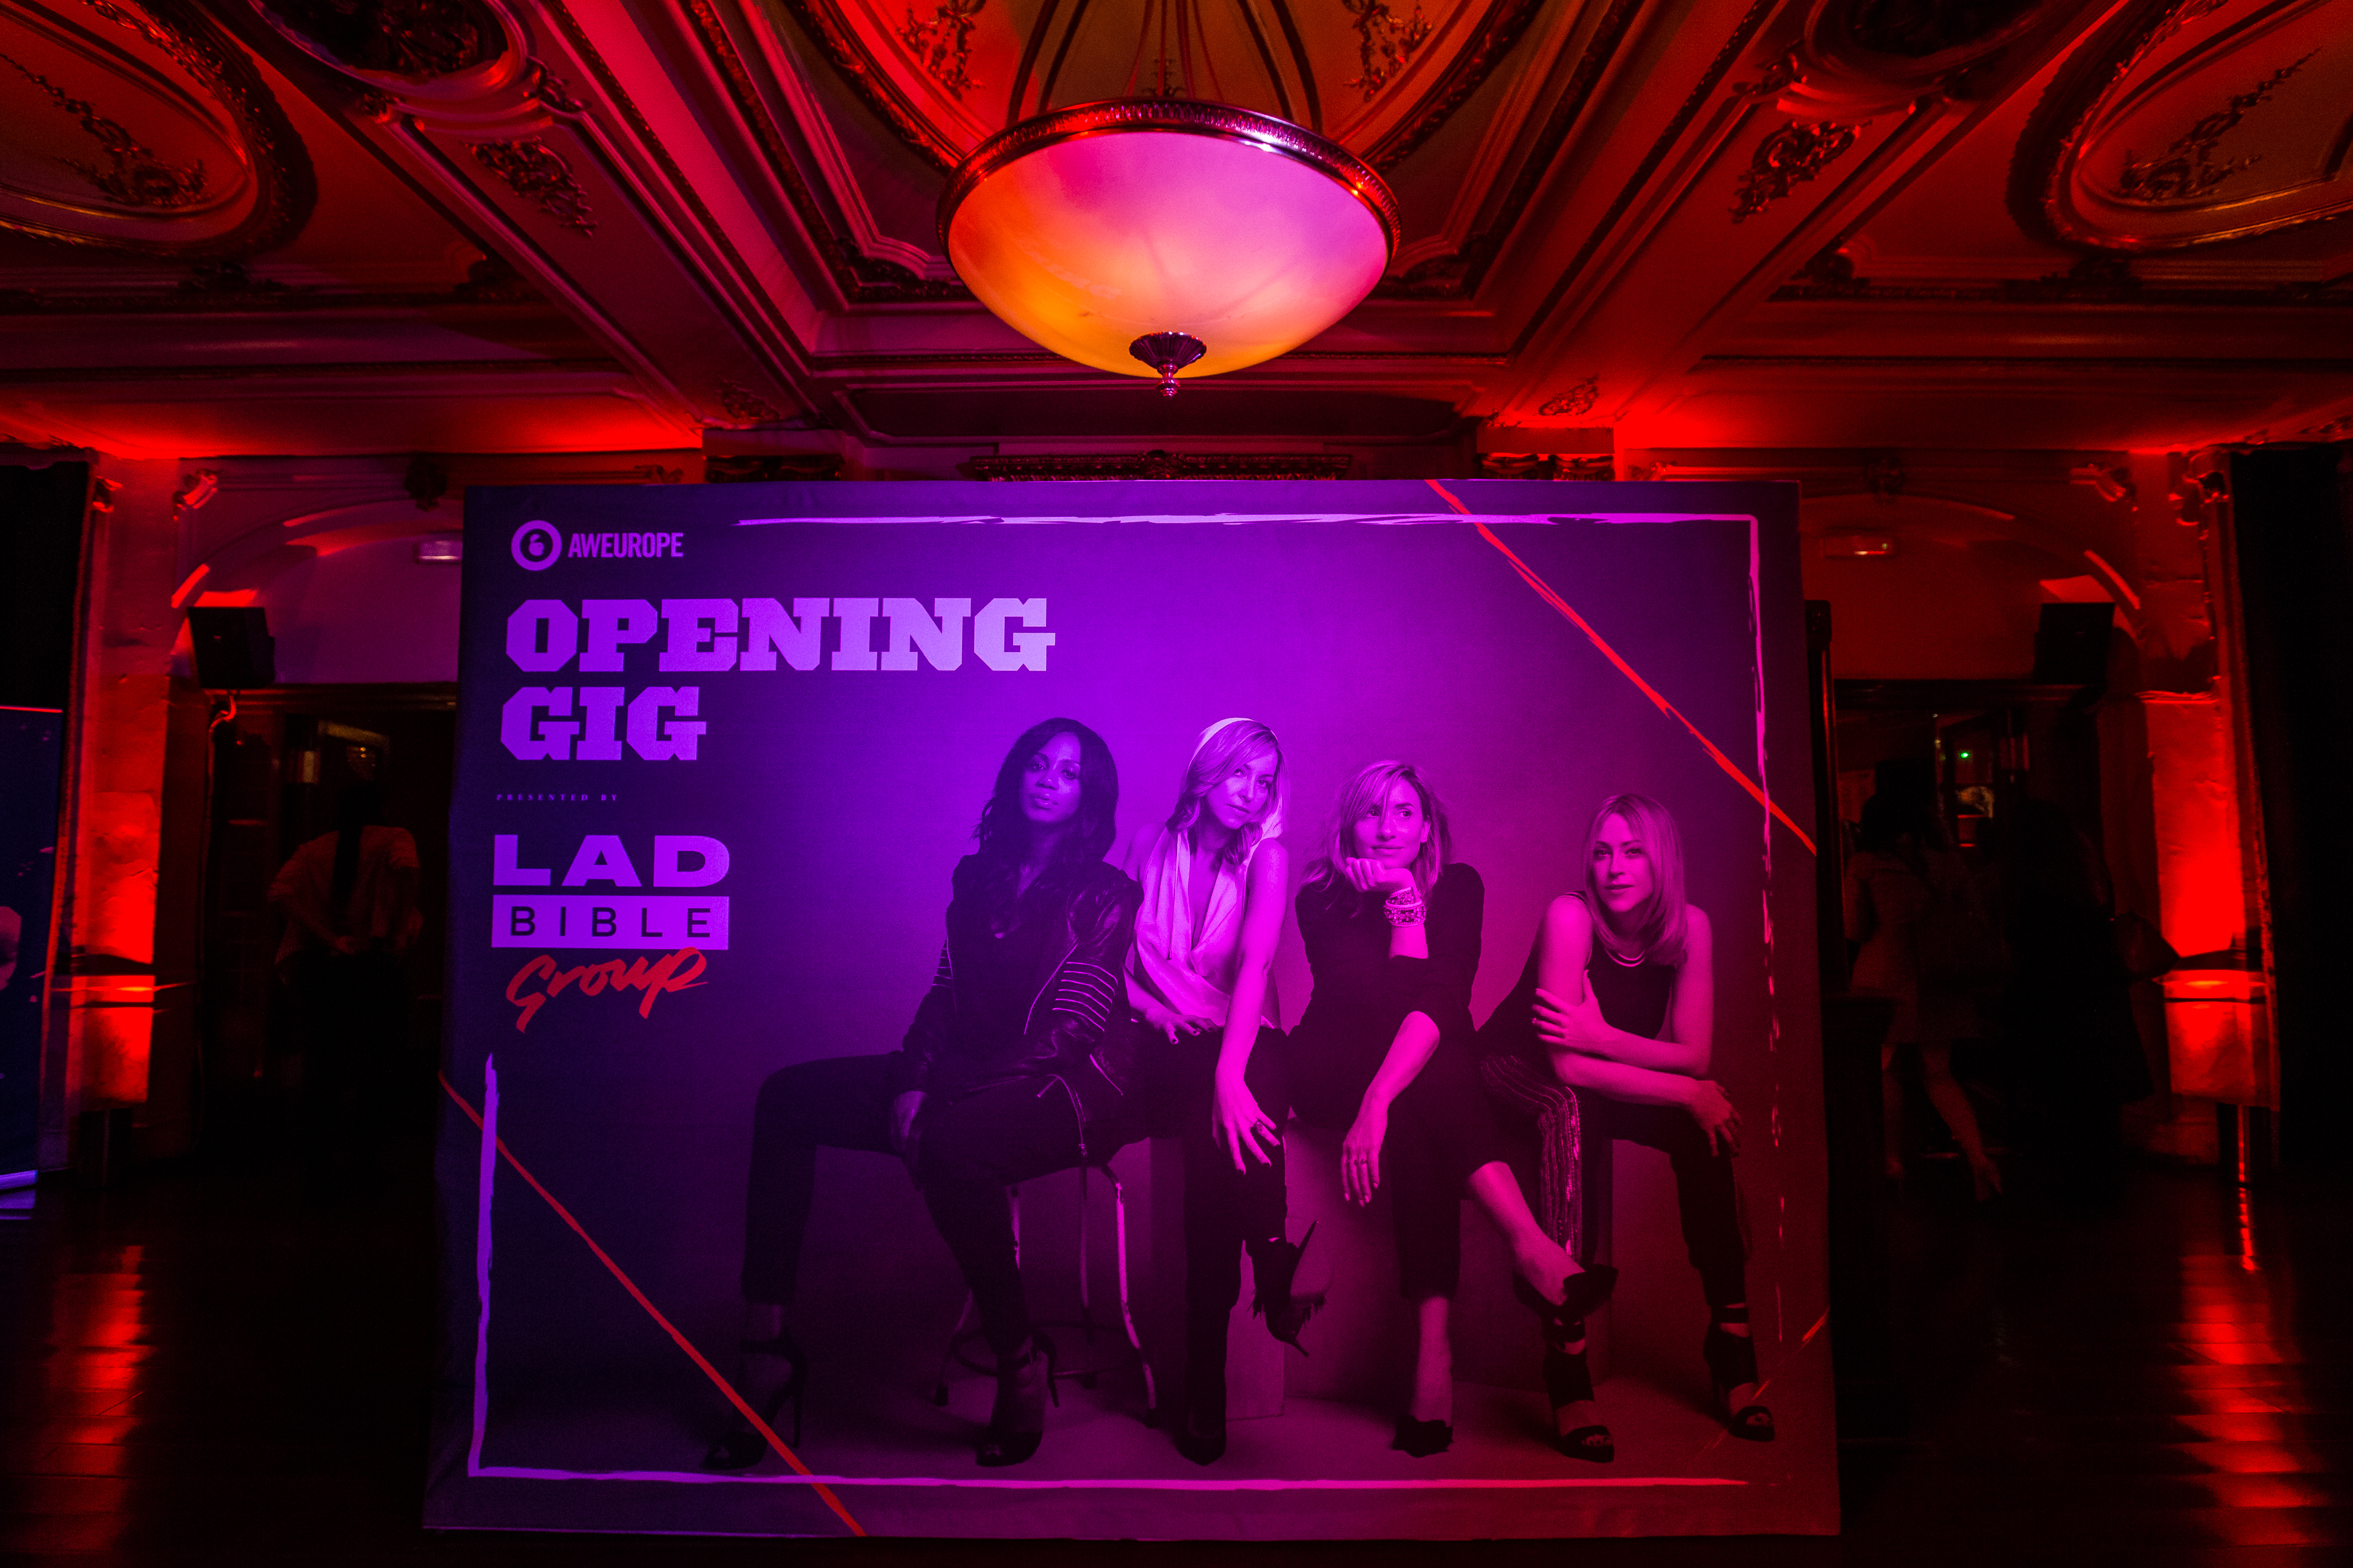 Opening Gig, Advertising Week Europe 2017, Koko, London, UK